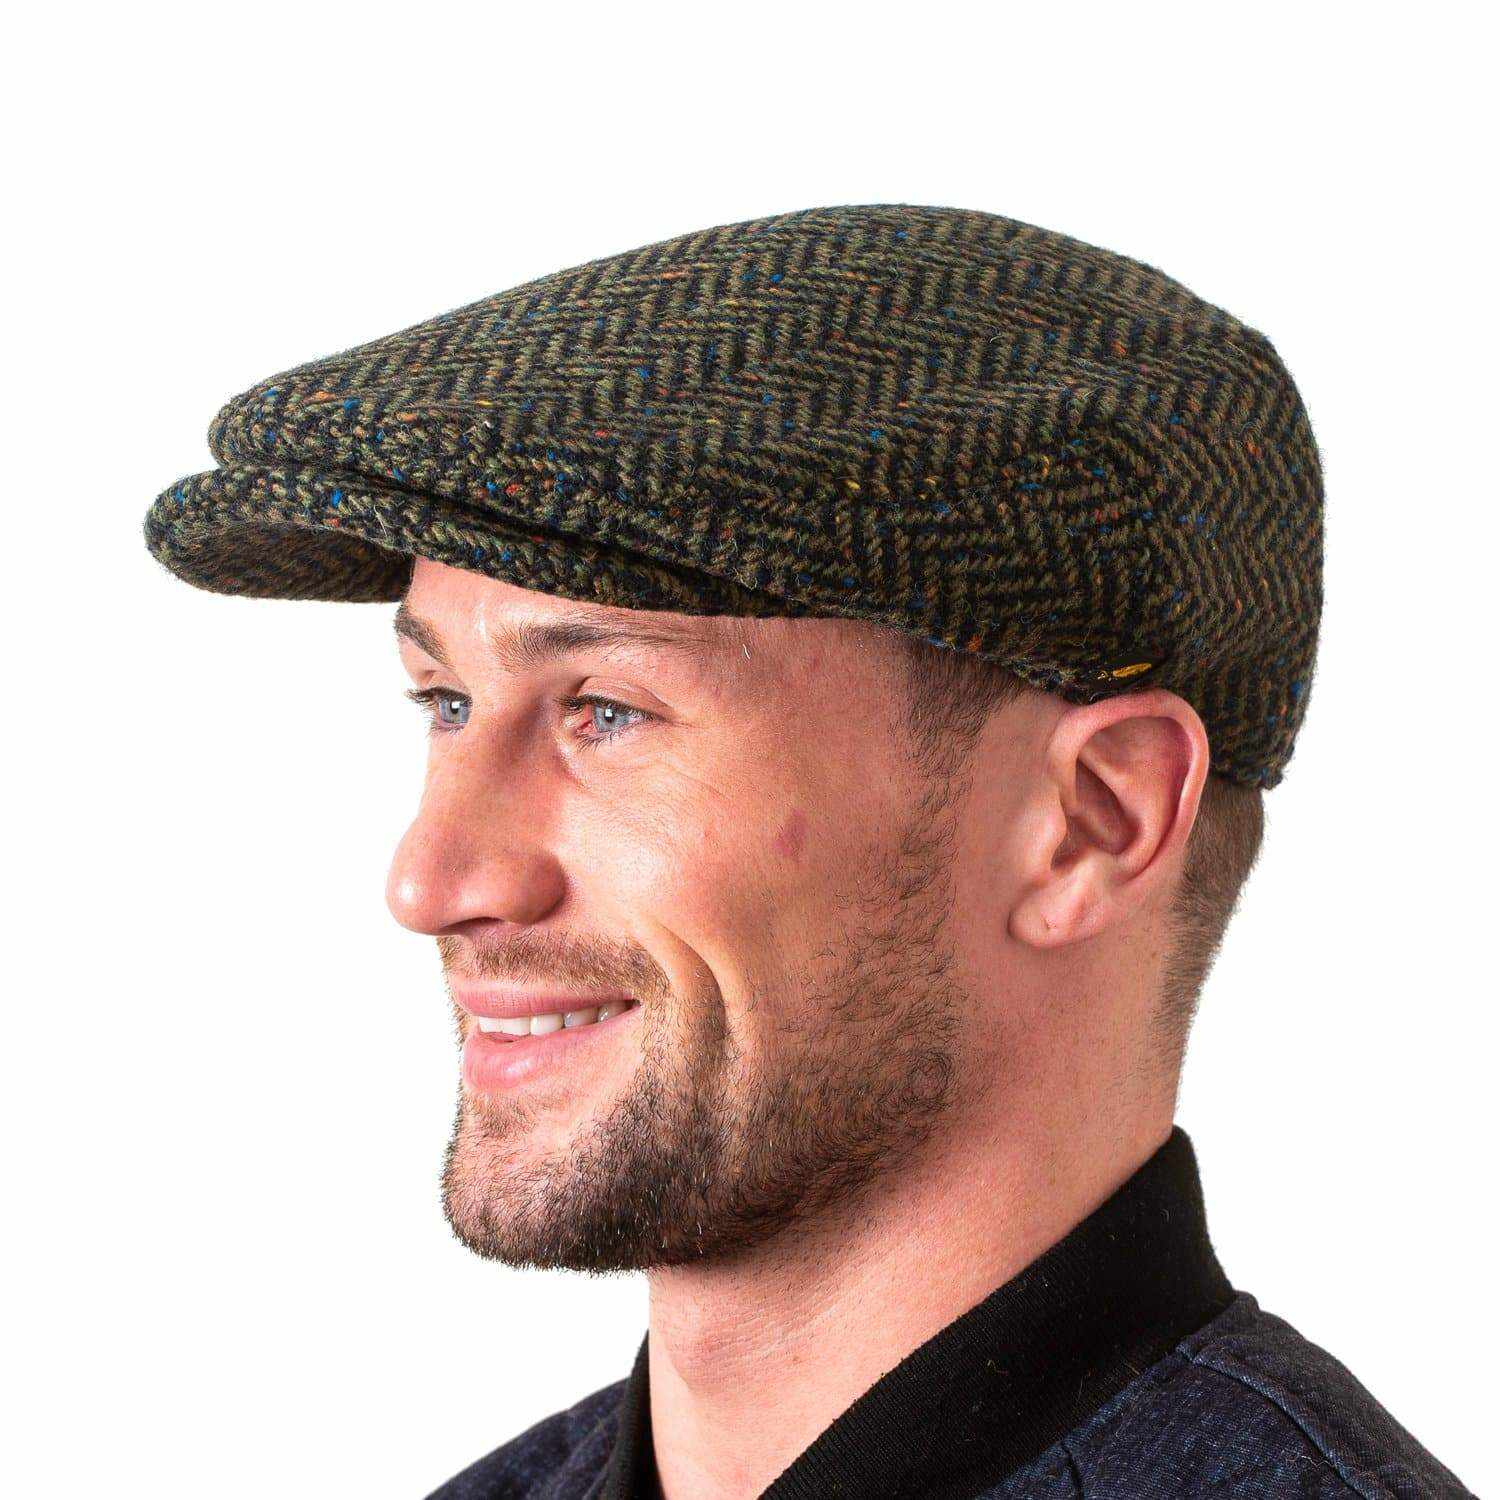 Irish Tweed Cap Made in Ireland Flat Cap with Curved Peak Style Slim L ...